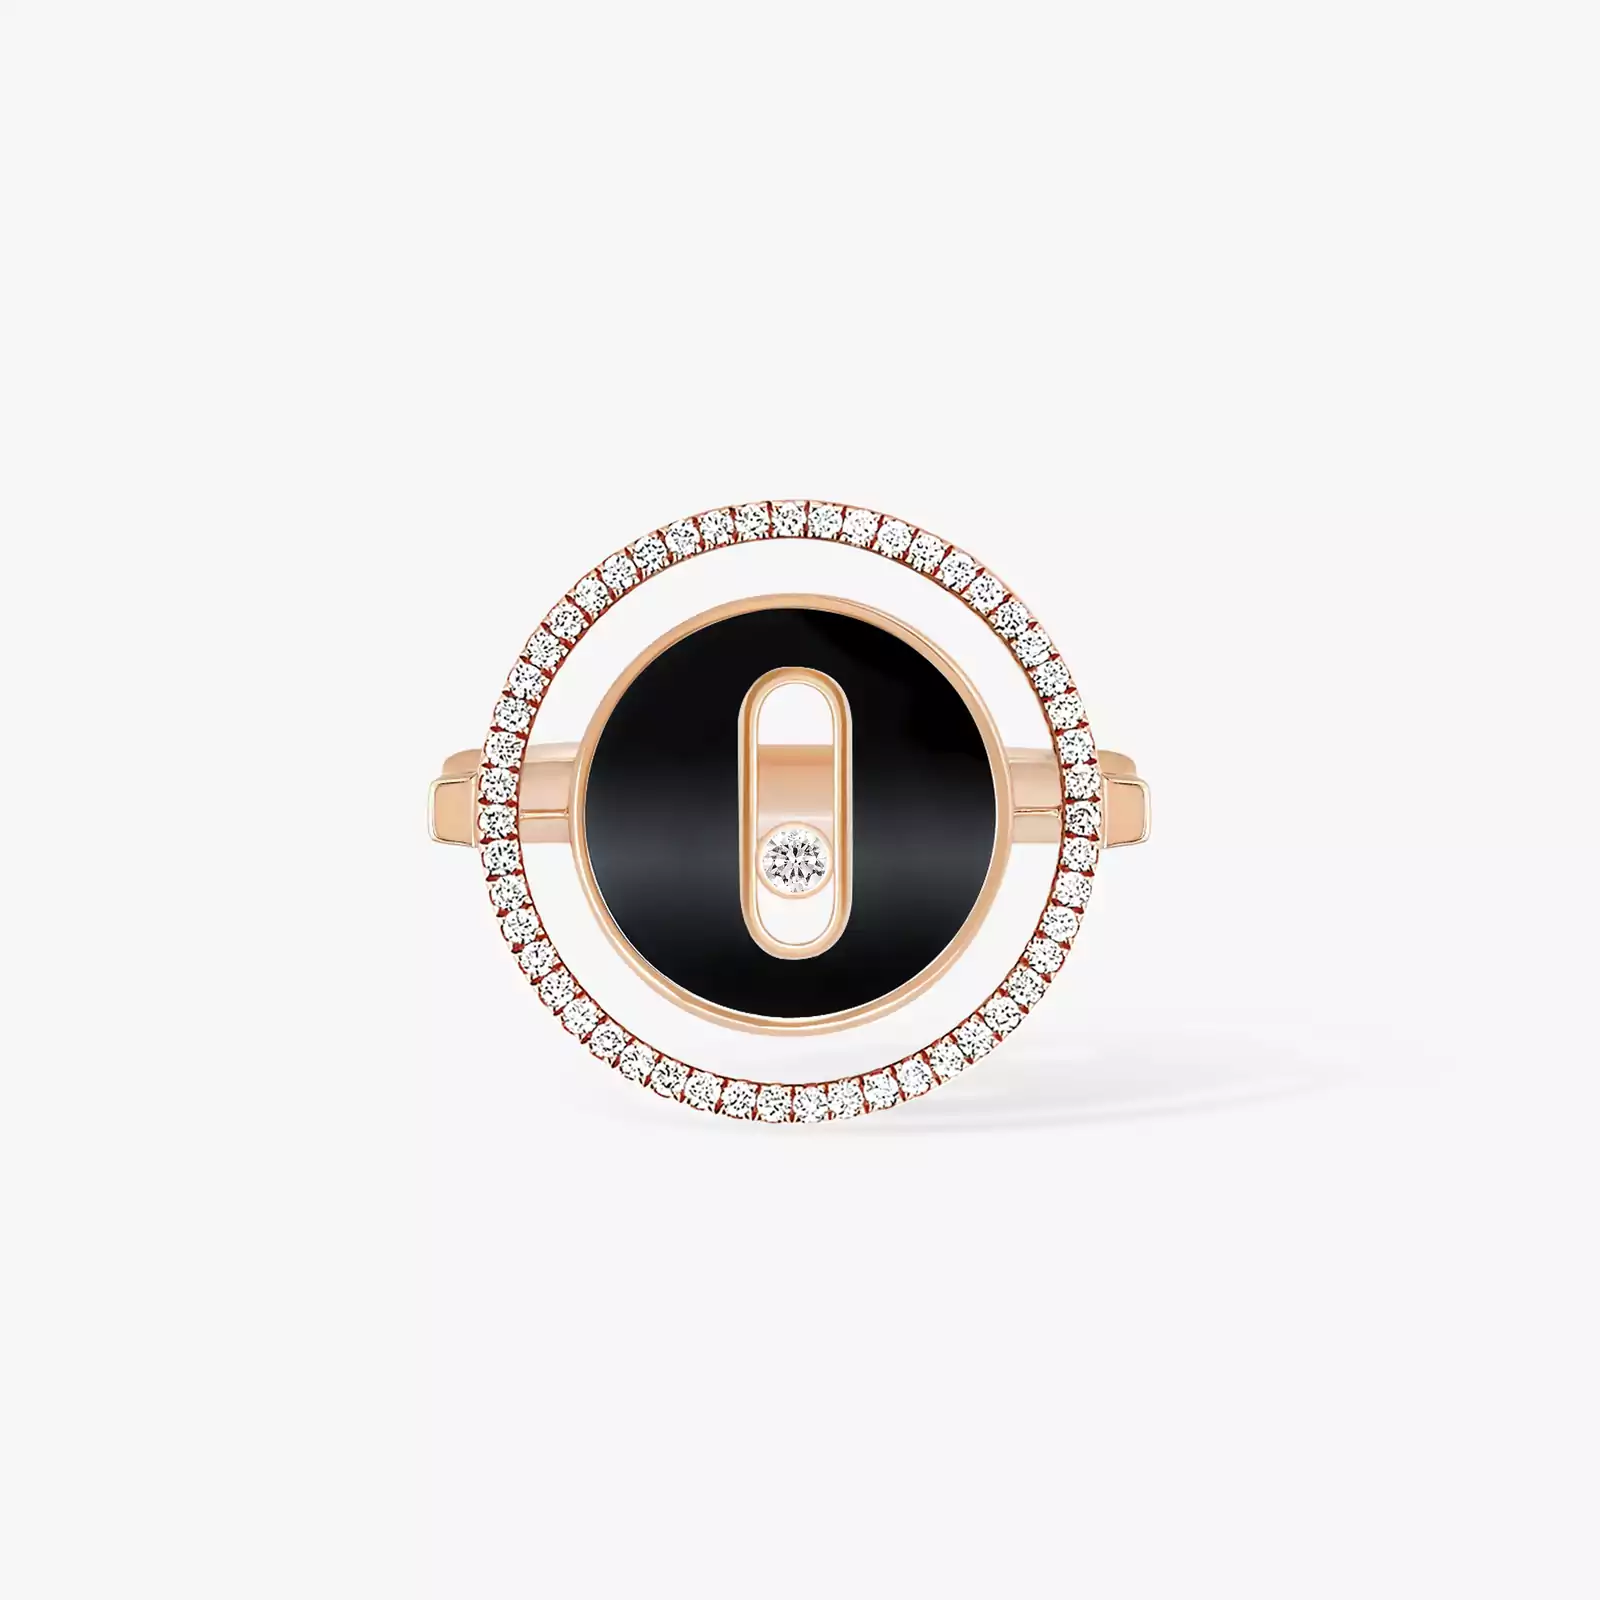 Кольцо Для нее Розовое золото Бриллиантами Кольцо Lucky Move PM с ониксом (малая модель) 12322-PG